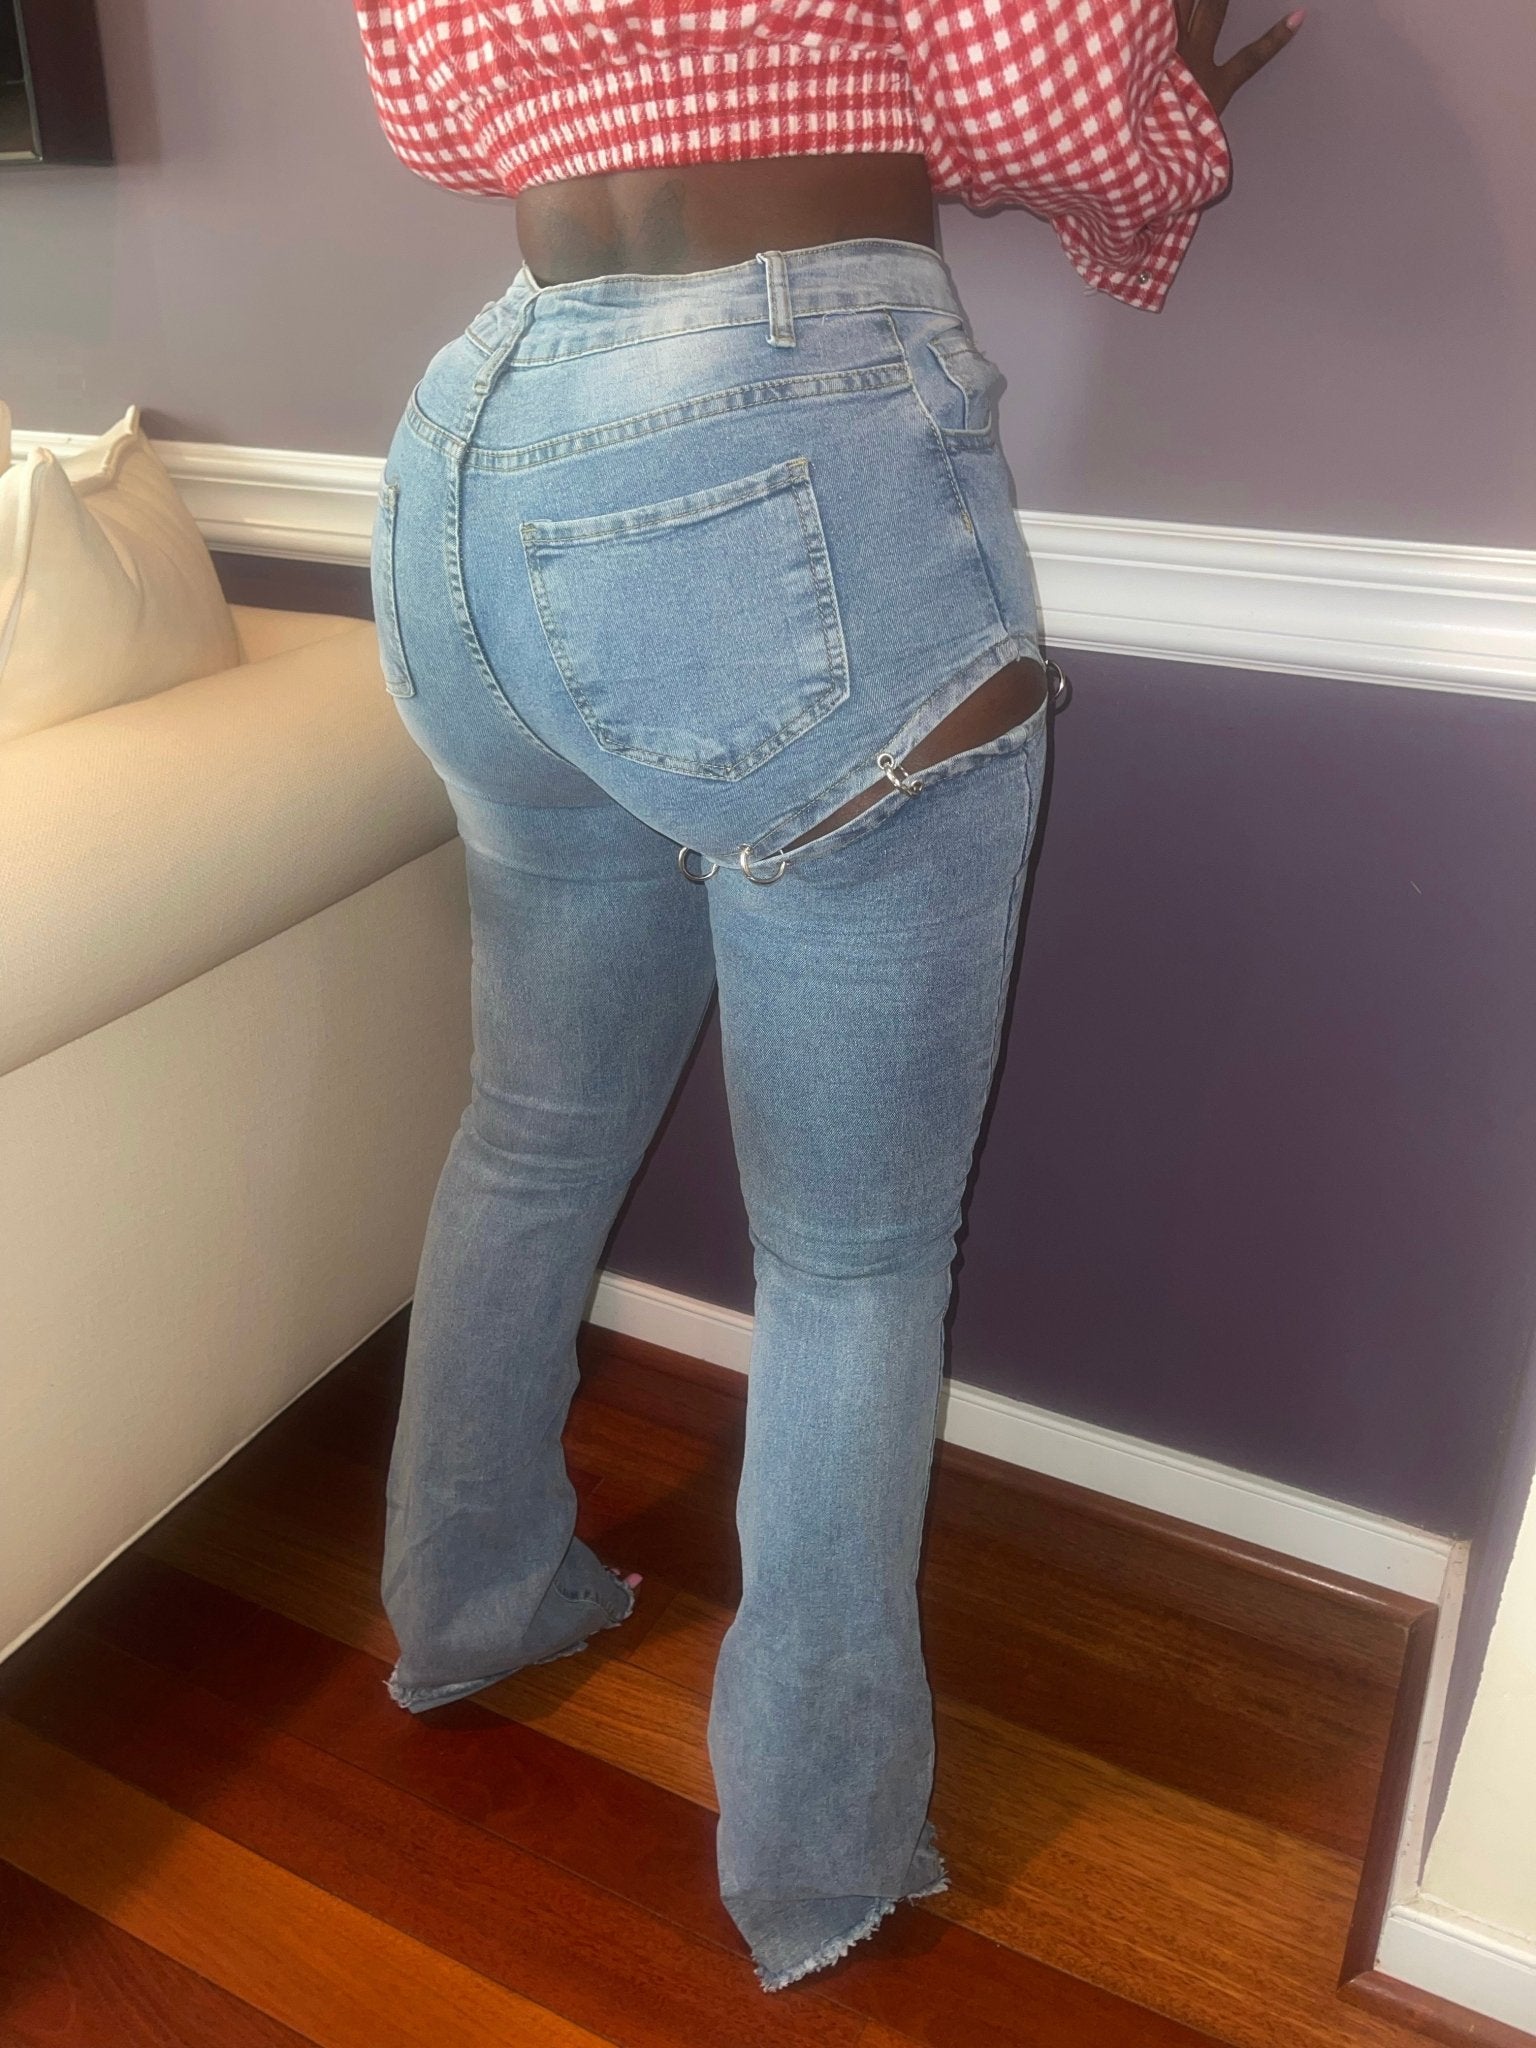 Maxi Stacked Denim Jeans - She's So Lavishh